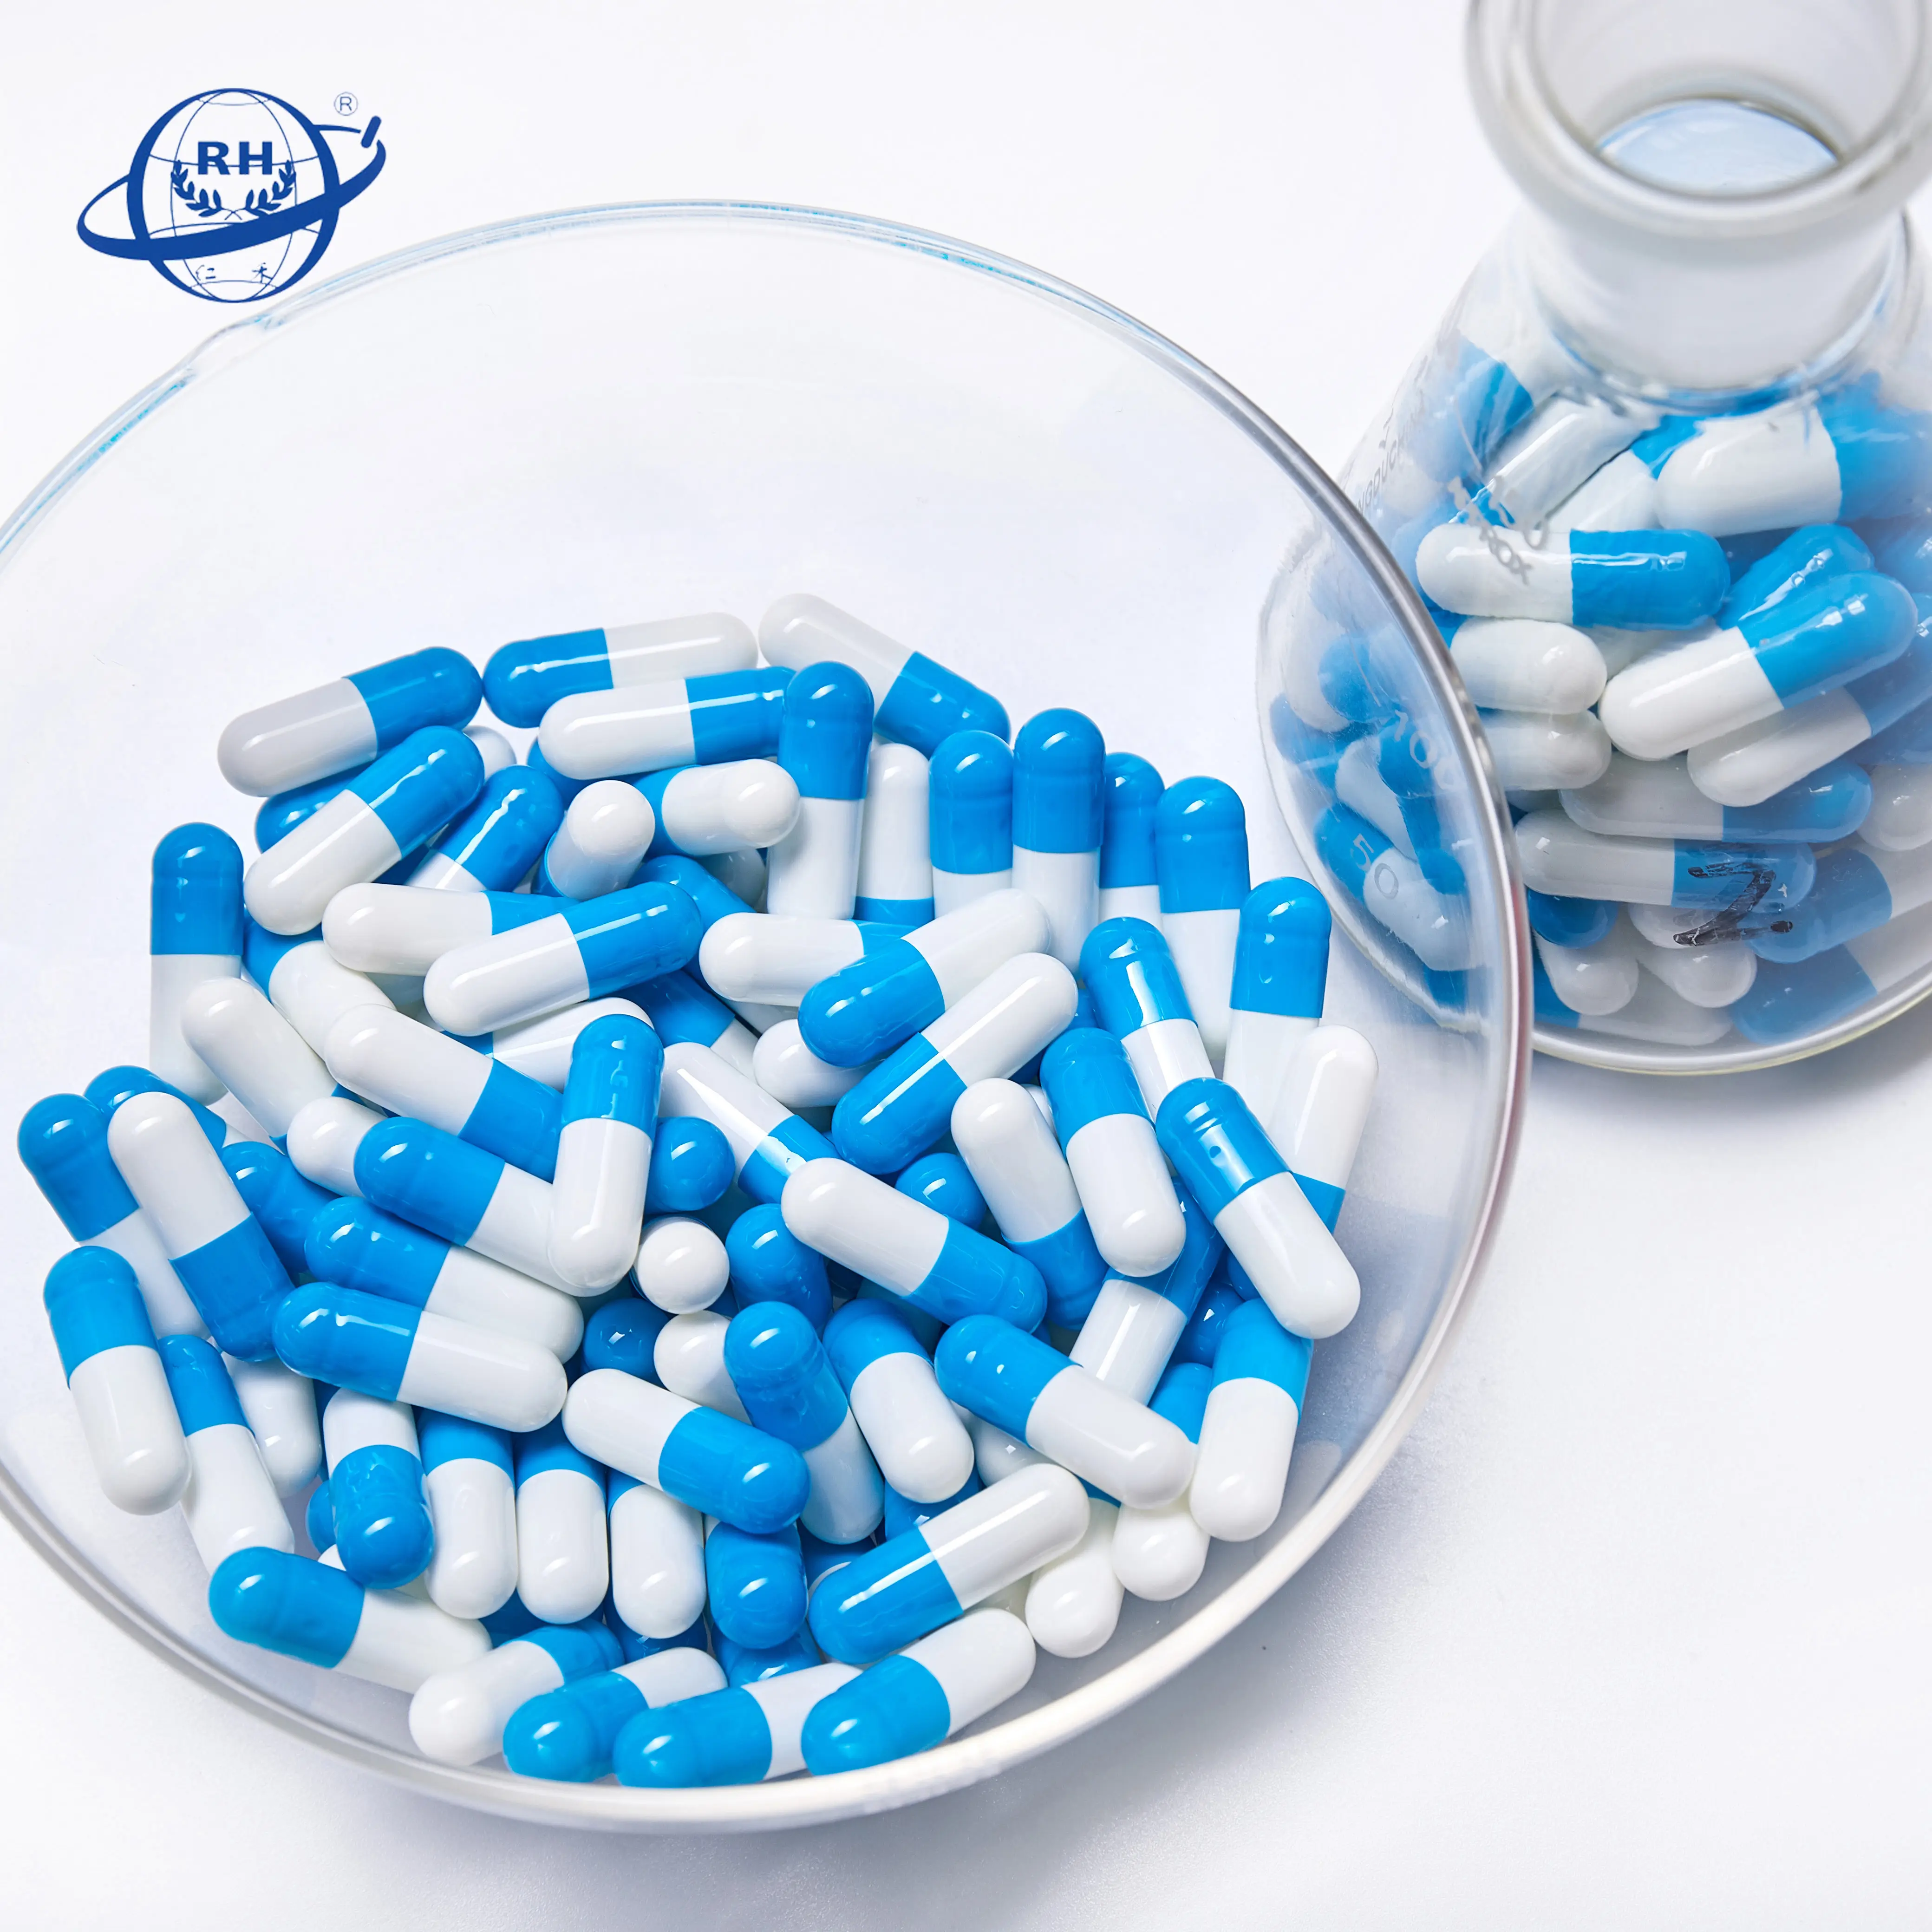 Buona qualità blu bianco vuoto gelatina dura capsule dimensione 0